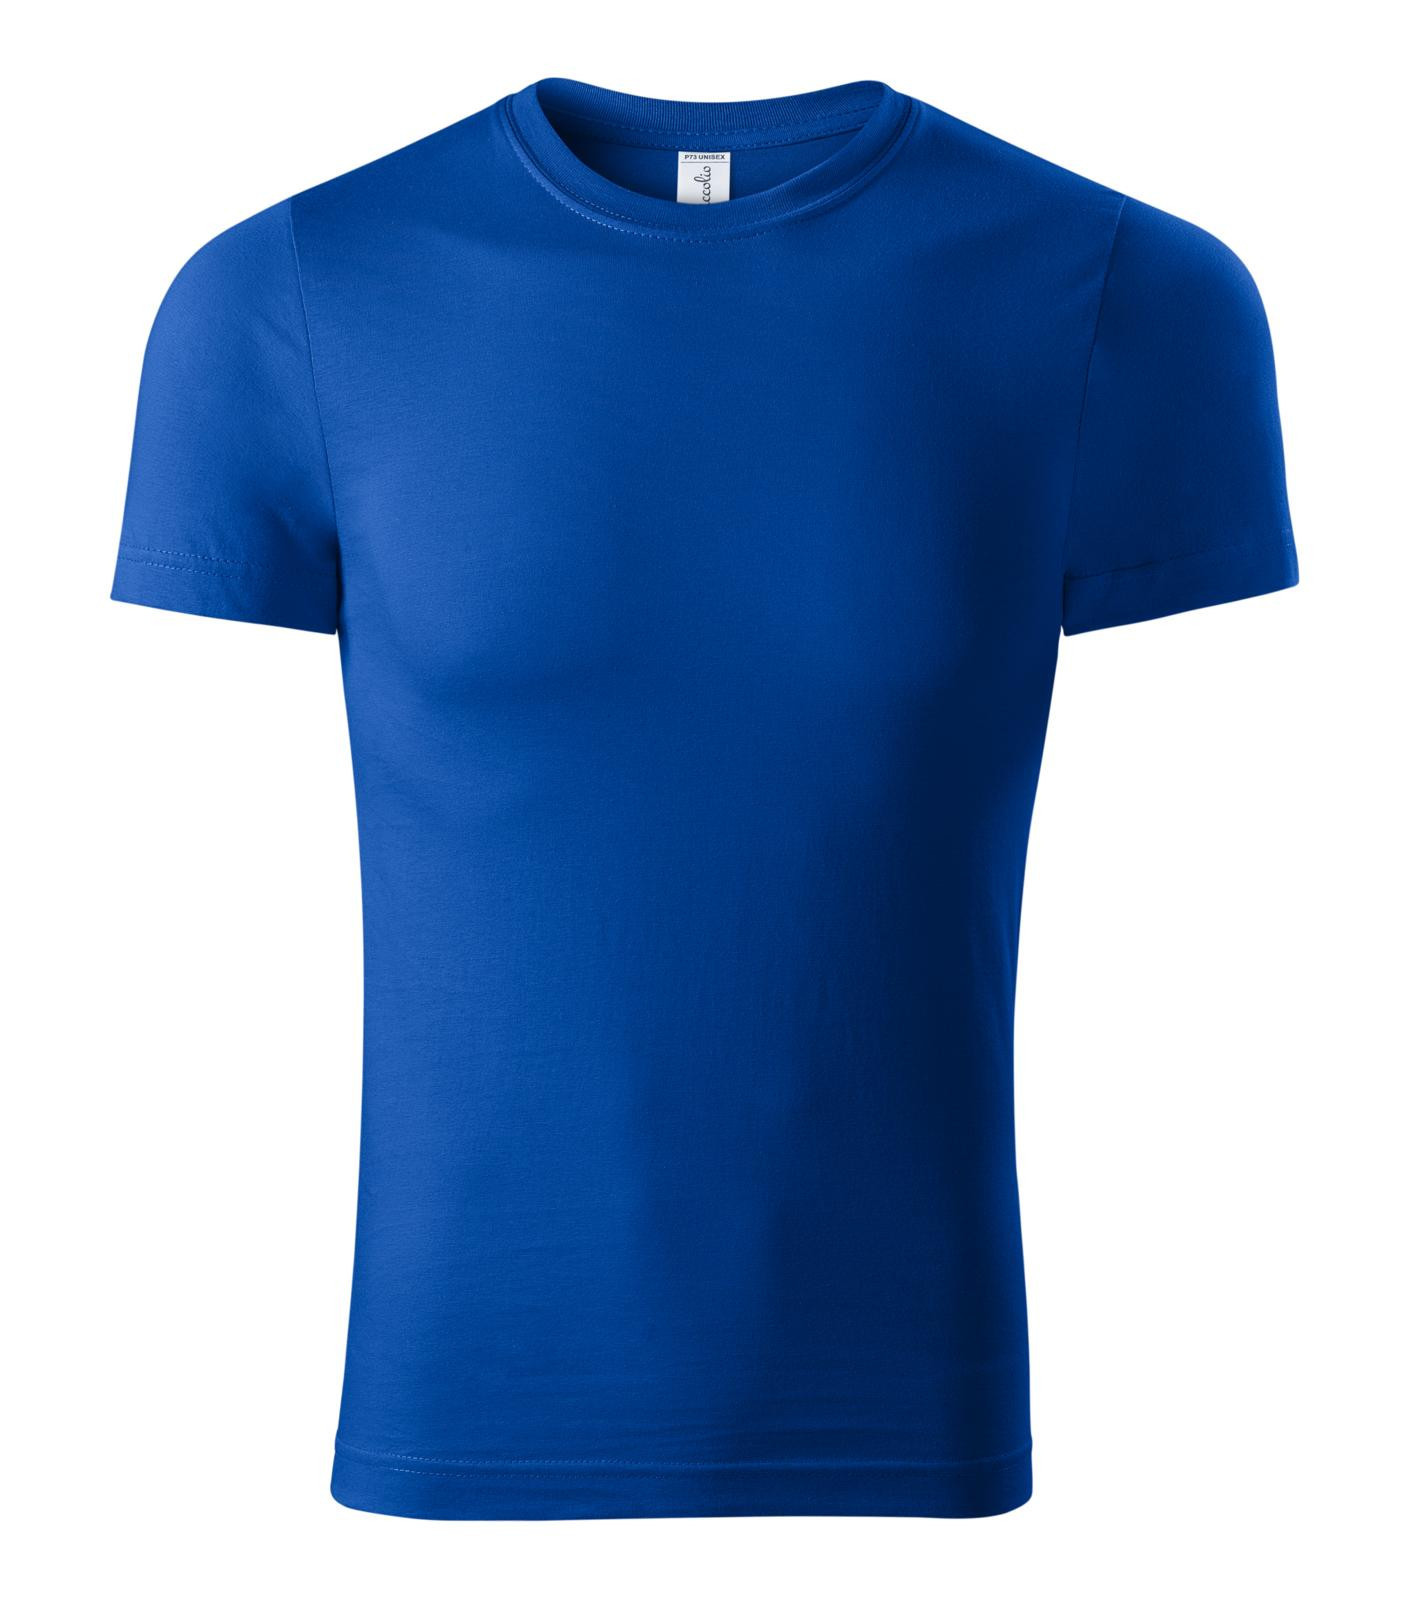 Unisex tričko Piccolio Paint P73 - veľkosť: XL, farba: kráľovská modrá